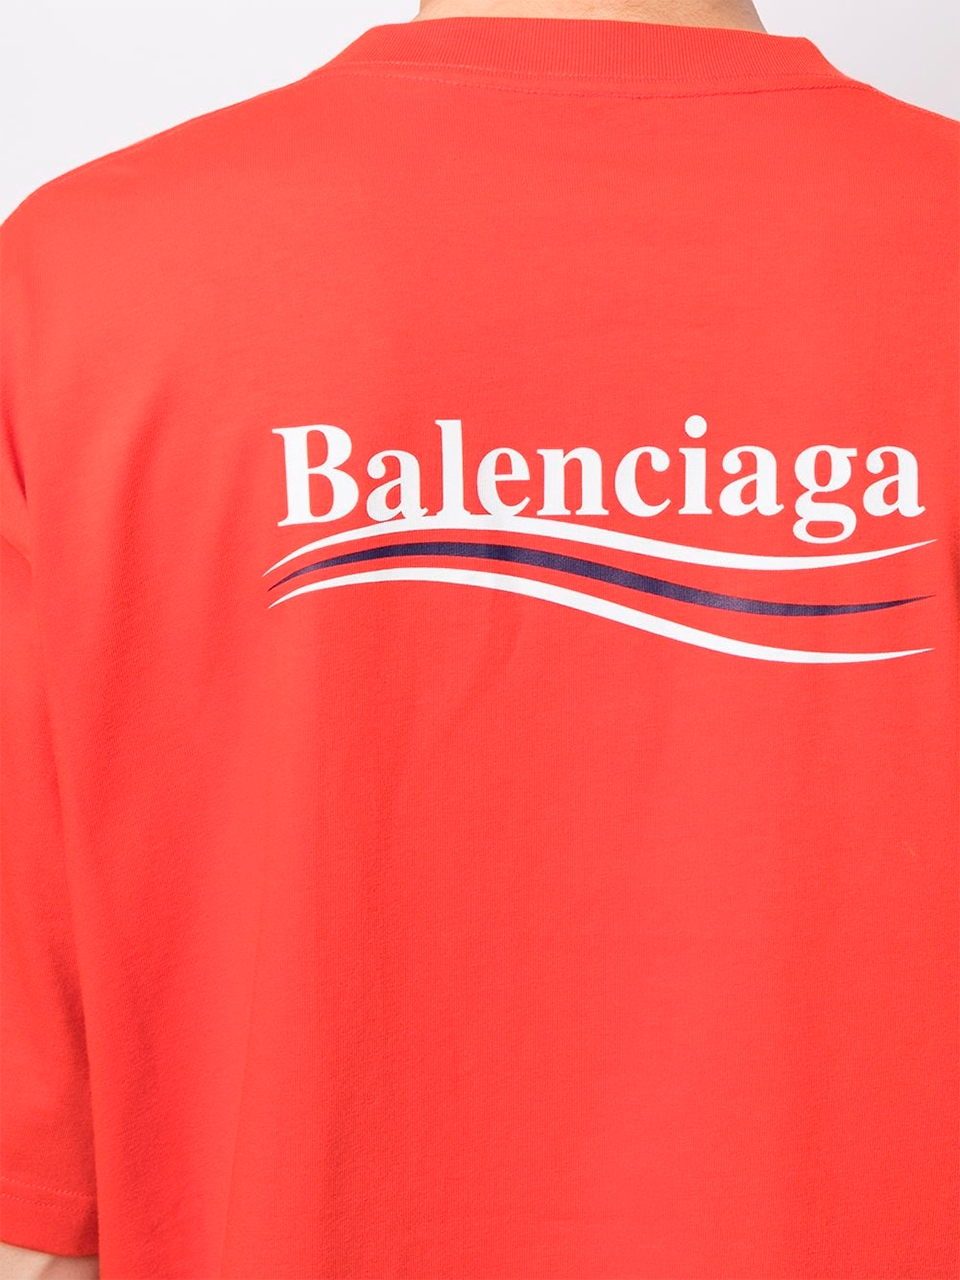 Imagem de: Camiseta Balenciaga Vermelha com Logo